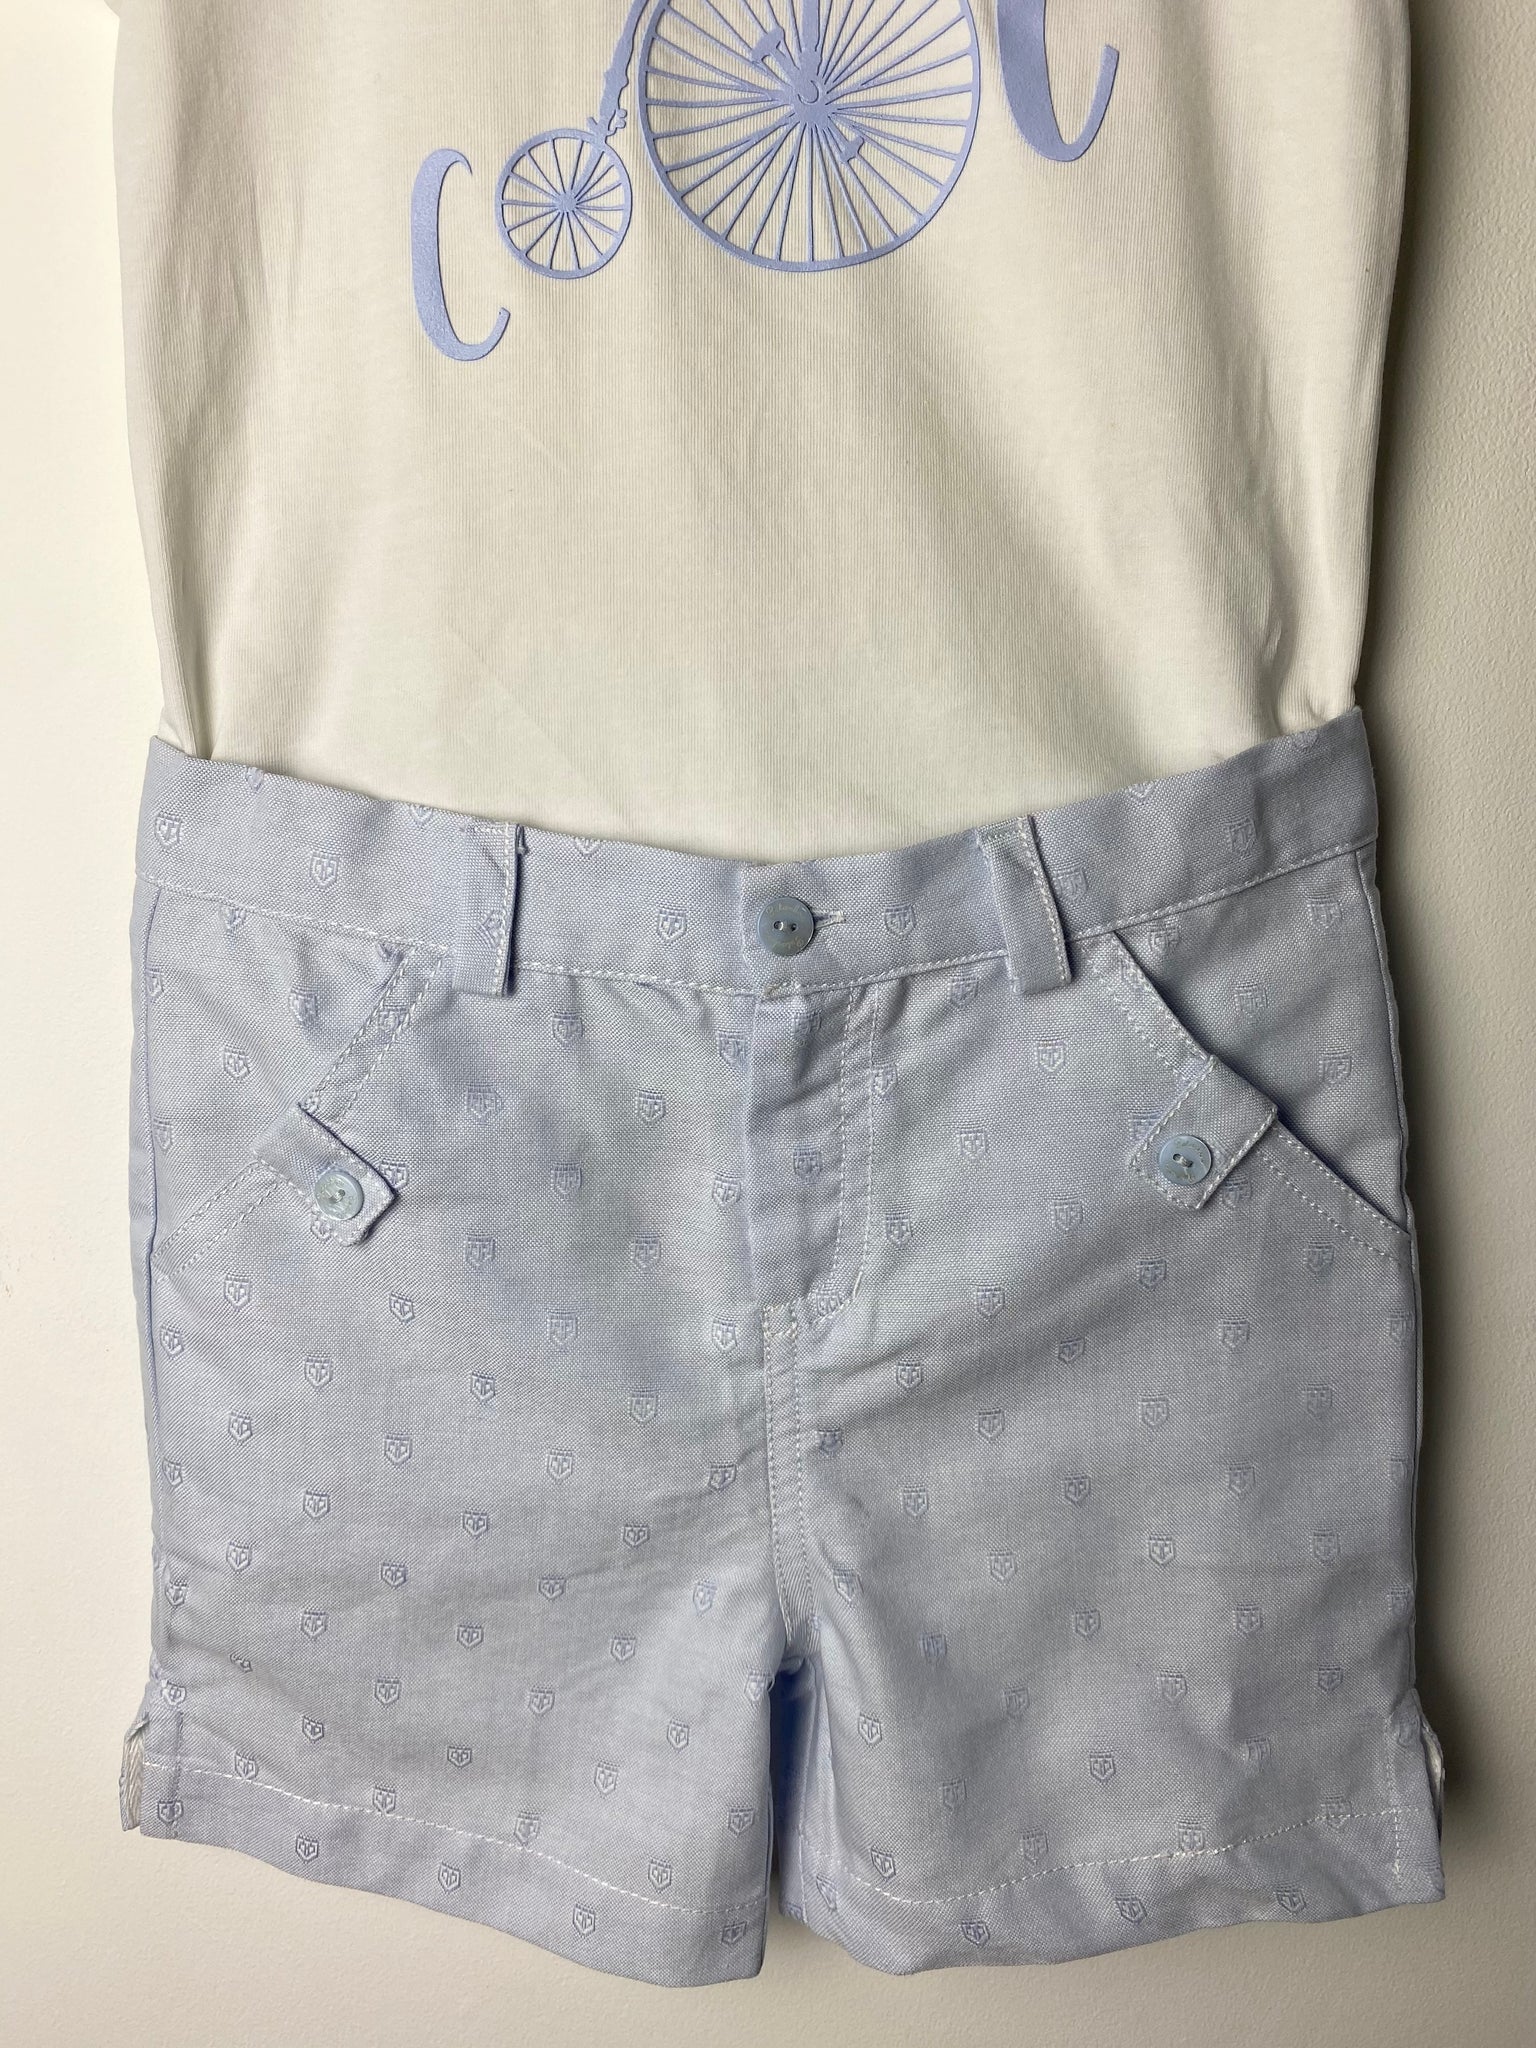 Patachou Boy's Blue & White Shorts Set